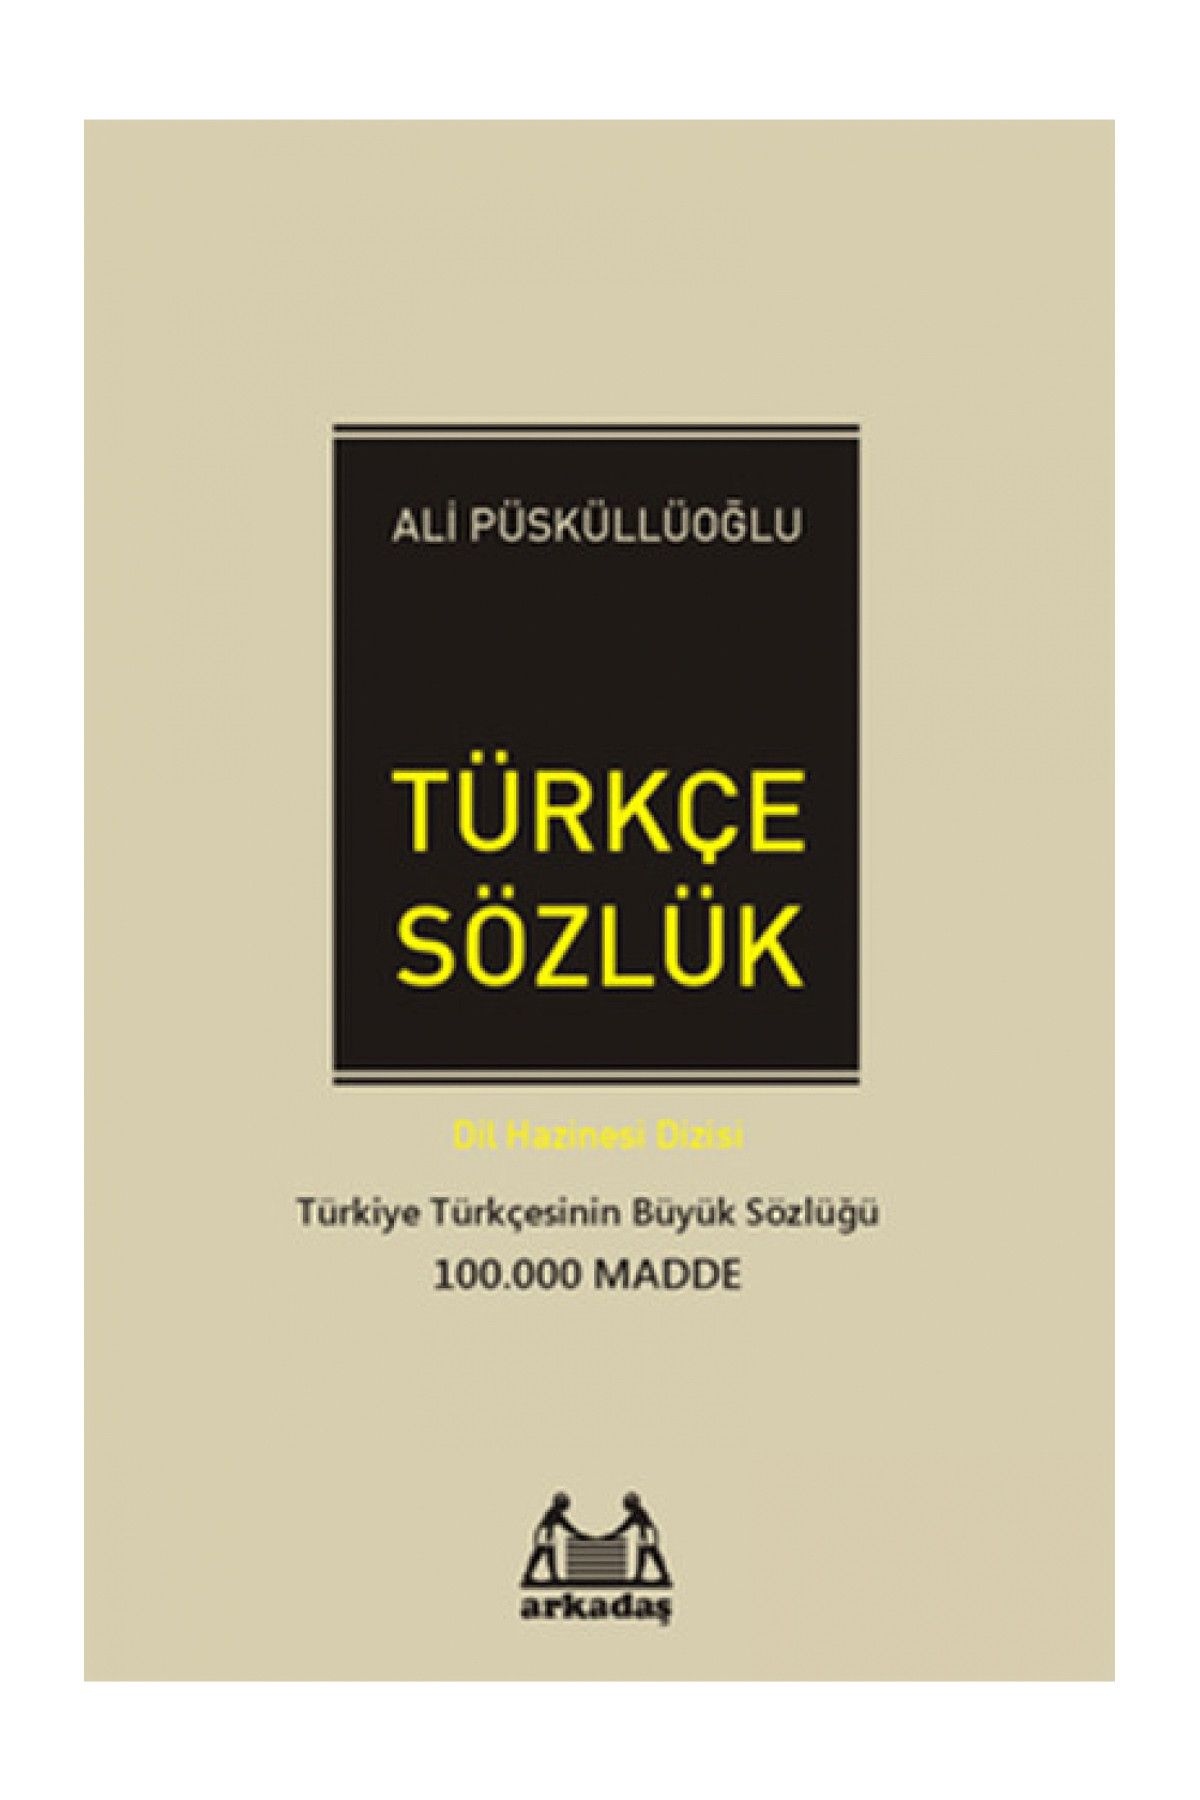 Arkadaş Yayıncılık Türkçe Sözlük (100.000 Madde) - Ali Püsküllüoğlu 9789755097169